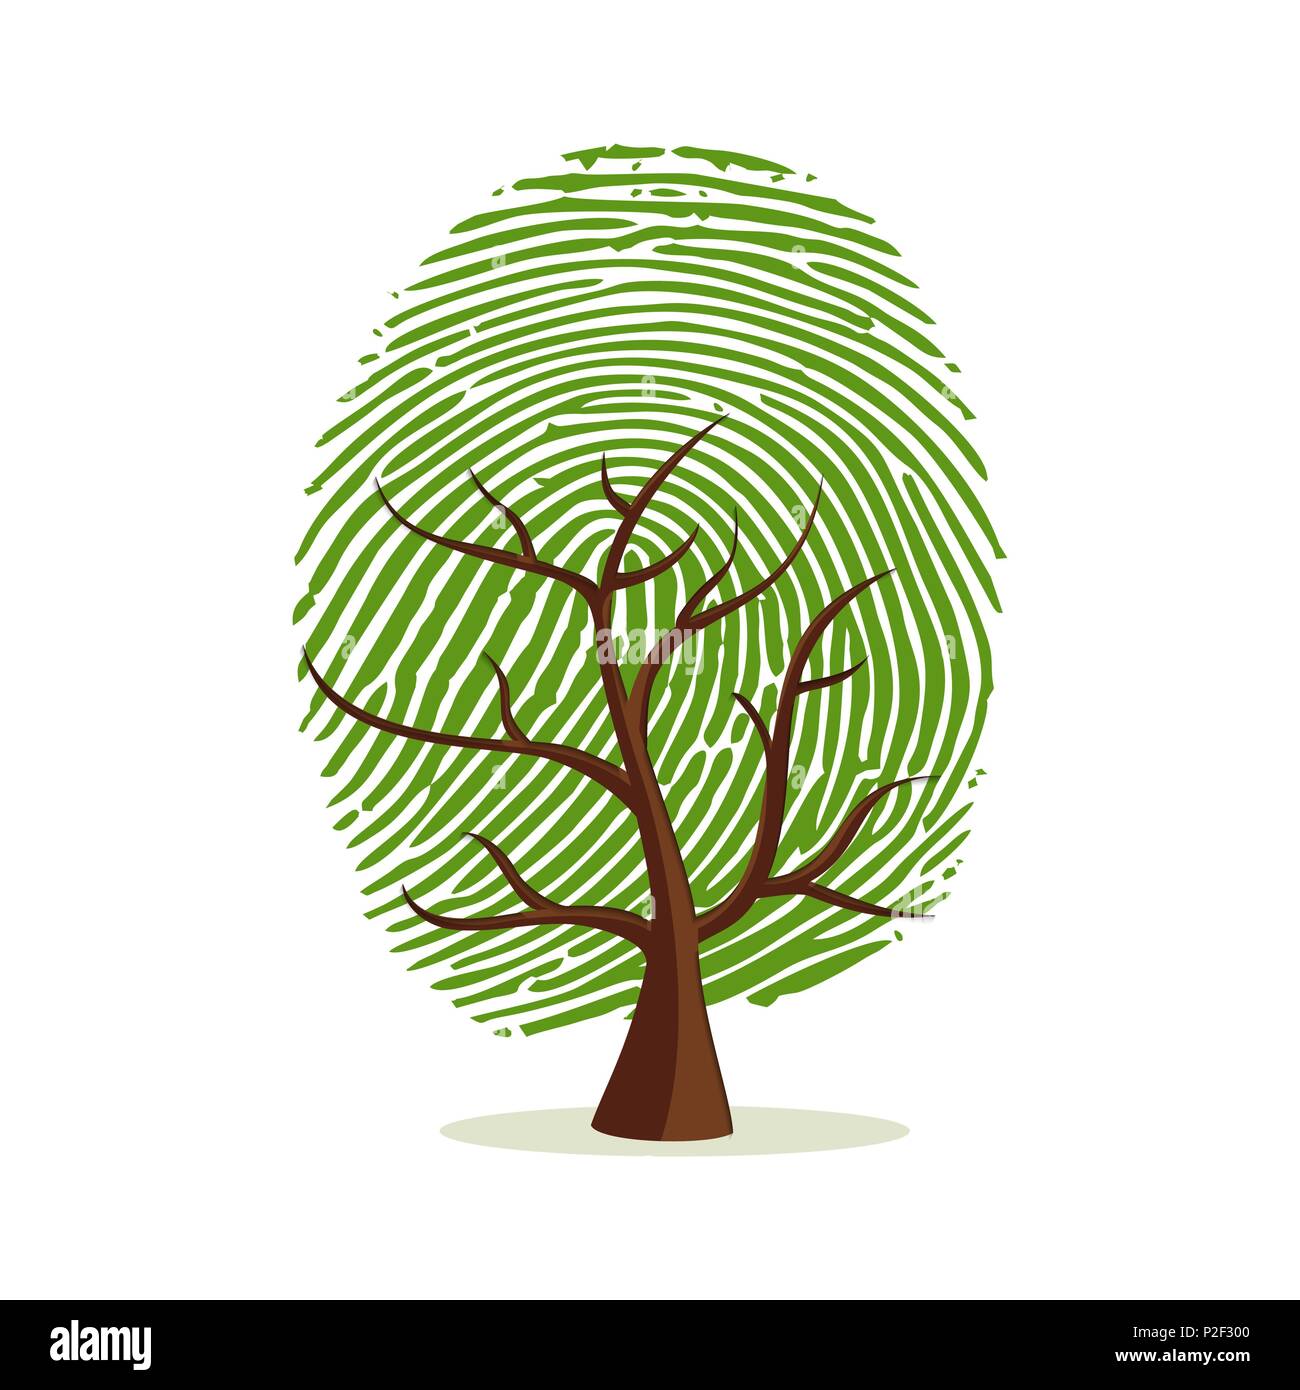 Fingerprint Baum. Grüne menschlichen Finger Print Konzept für Psychologie Projekt, Identität oder Persönlichkeit Designs. EPS 10 Vektor. Stock Vektor